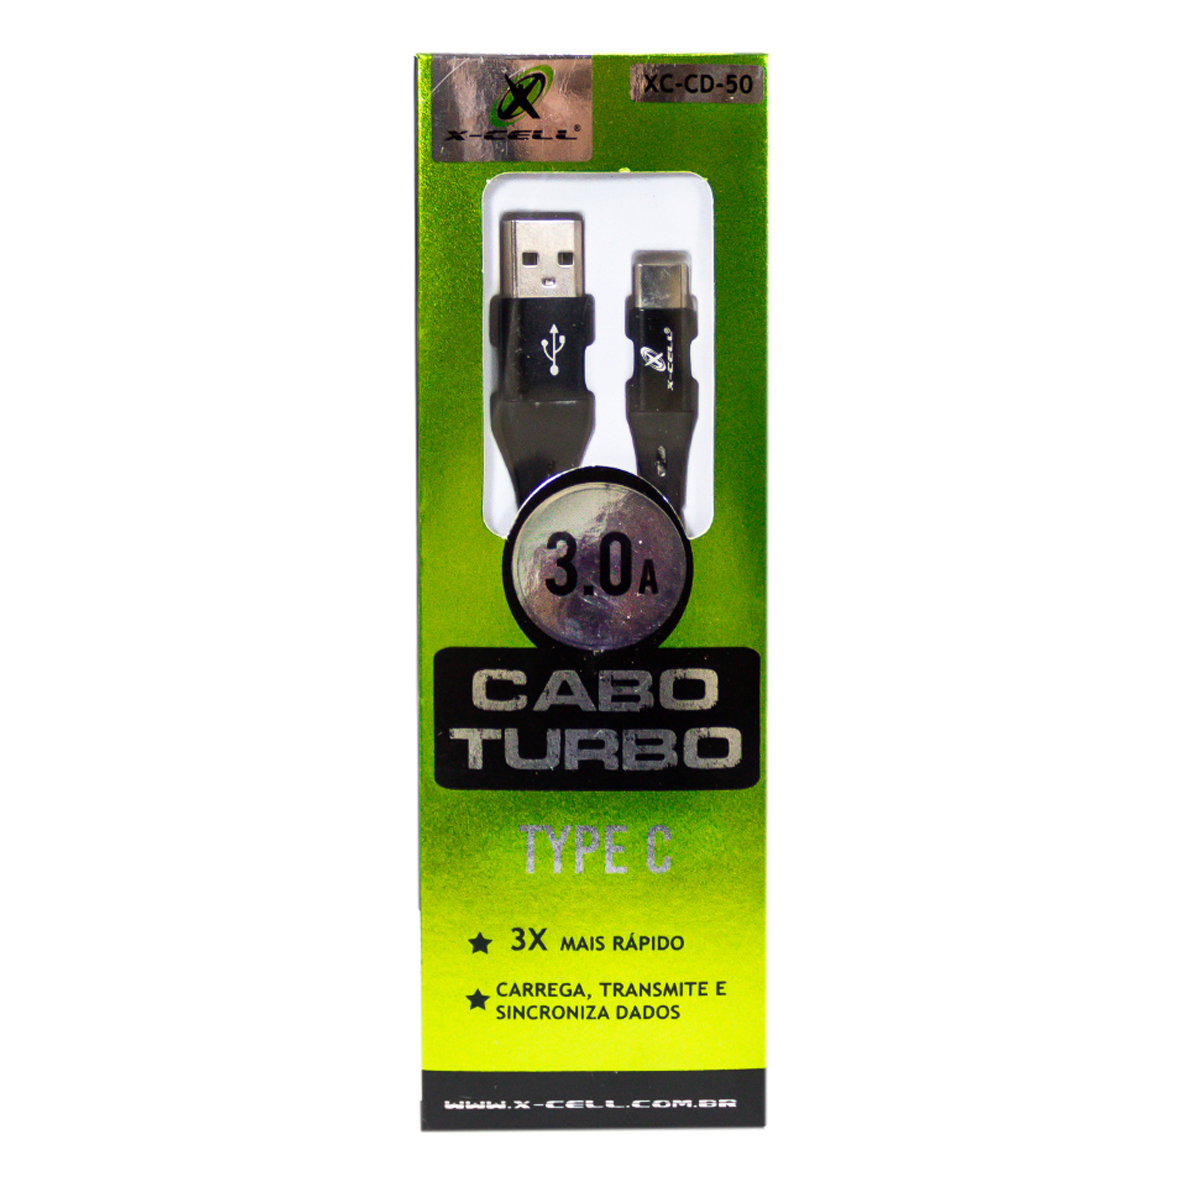 7898615158192 - CABO DE DADOS TURBO USB/TYPE CD-50 C 3.0A -1.0 METROS (BLISTER)